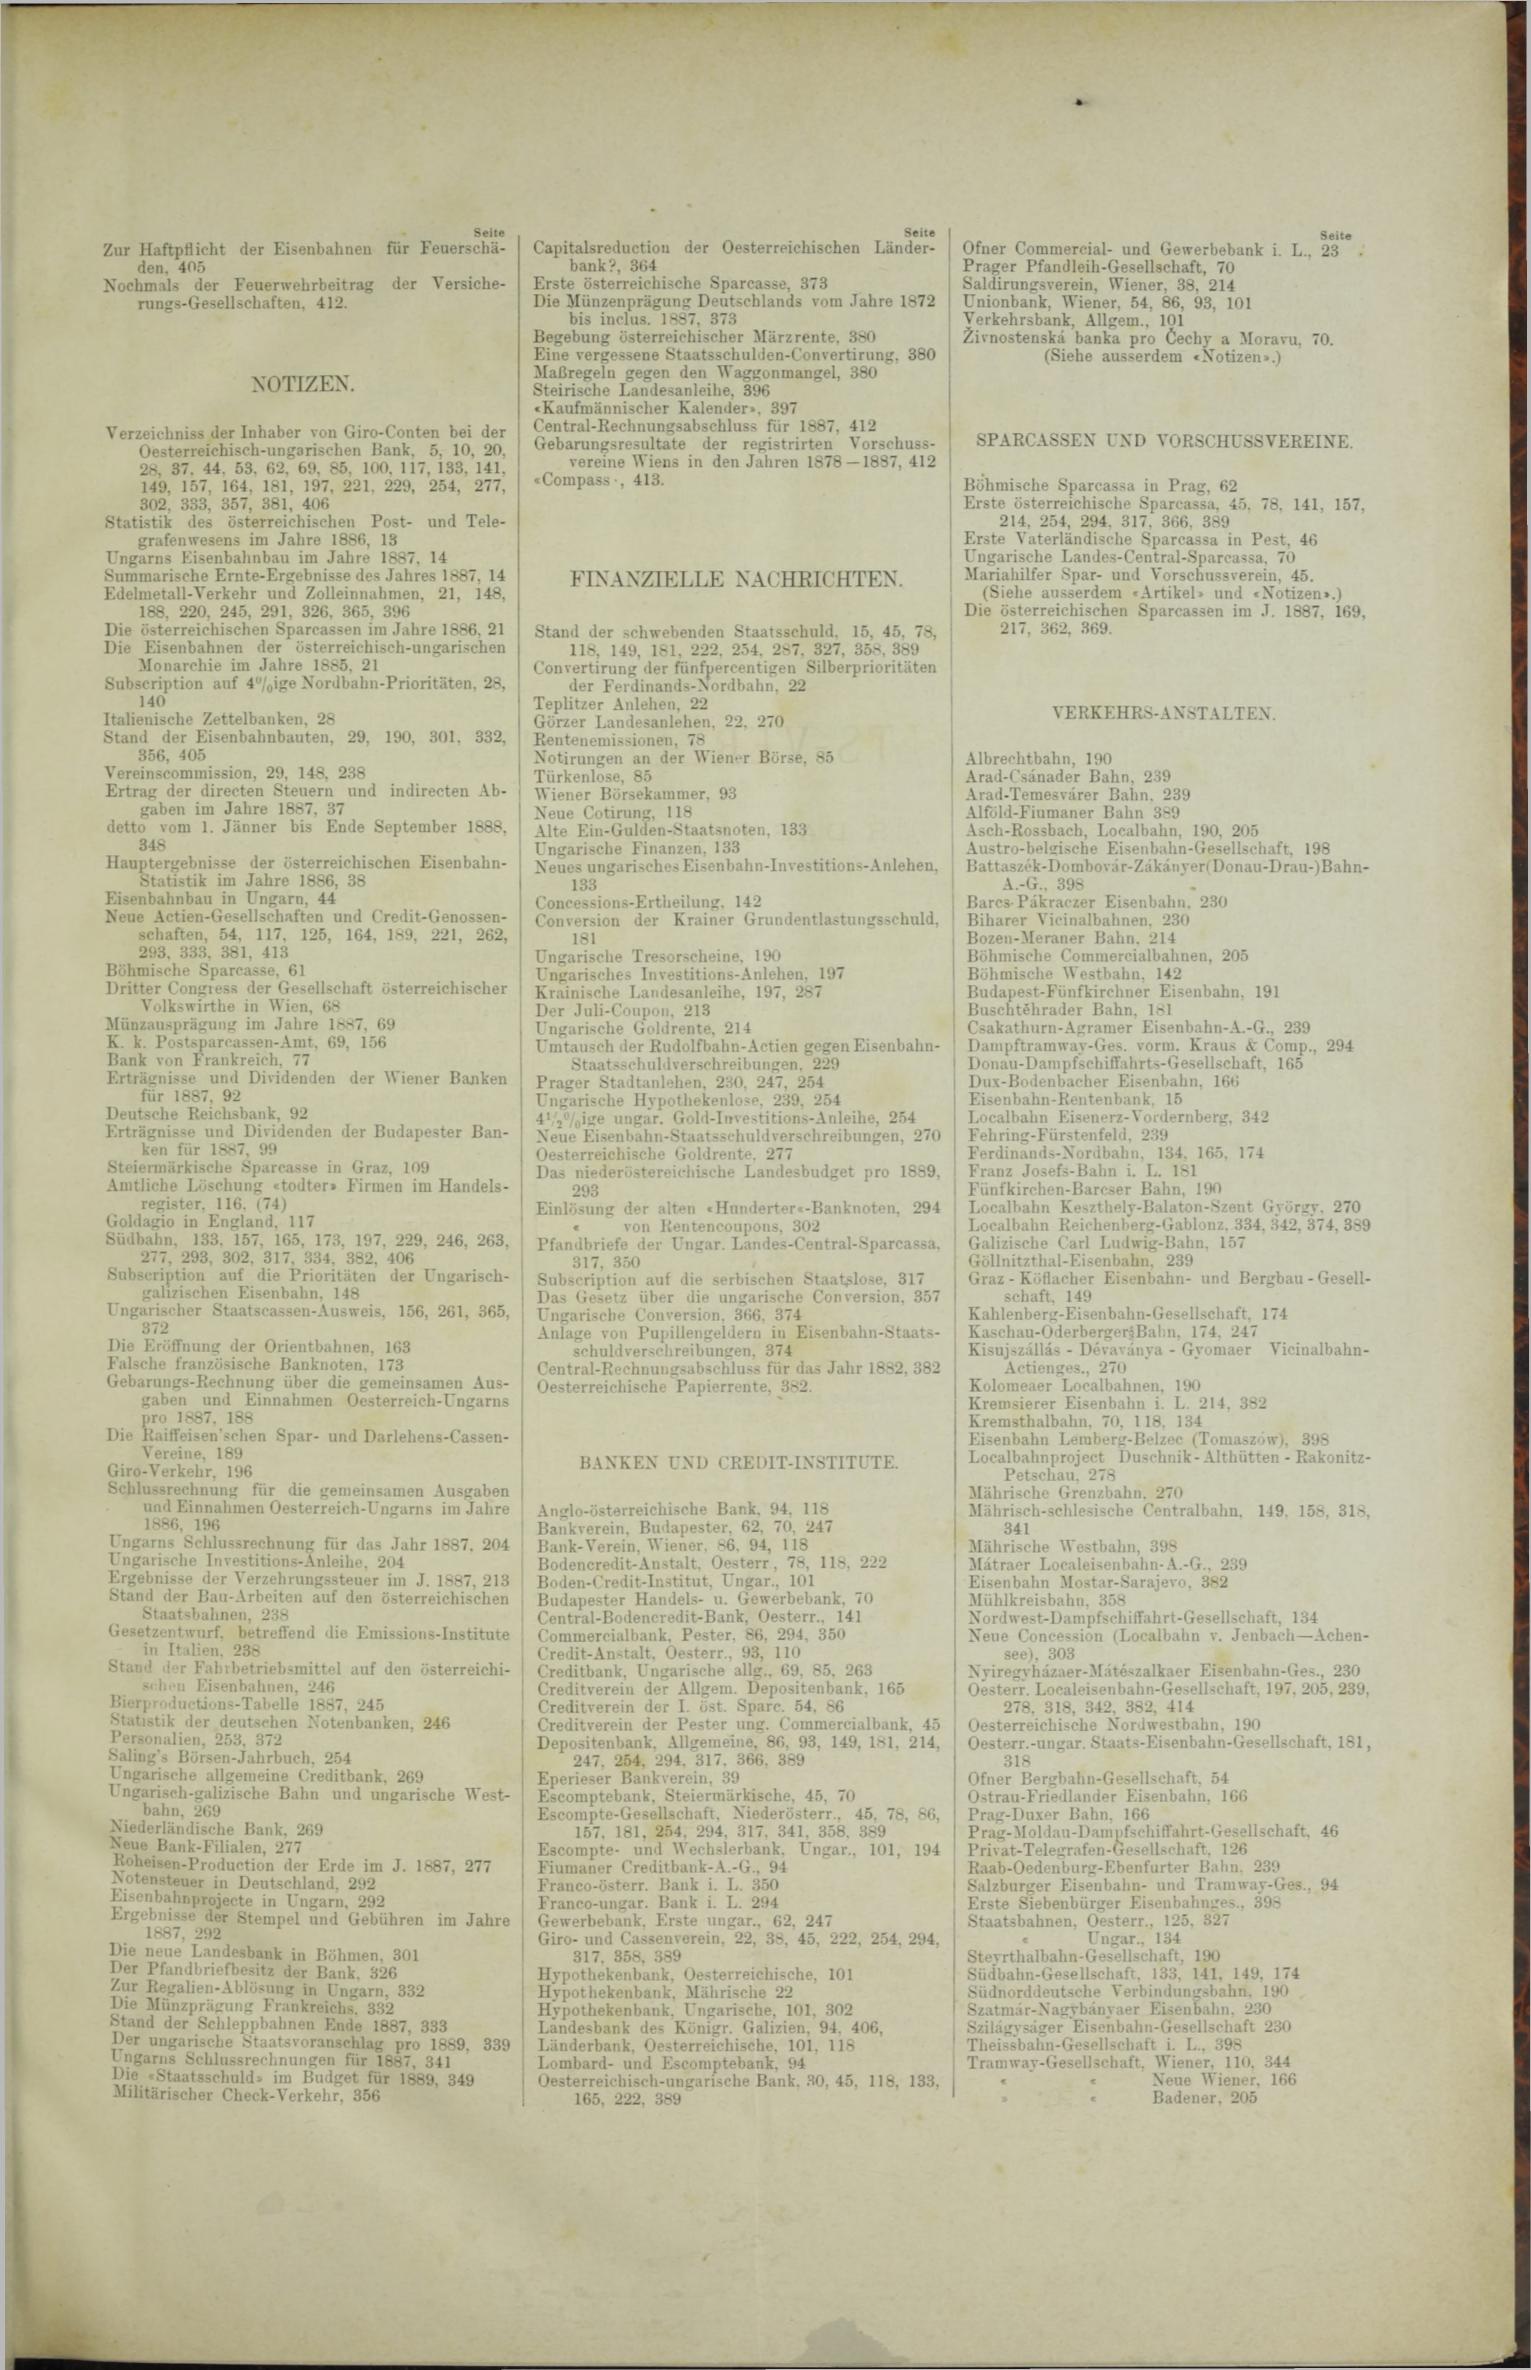 Der Tresor 07.06.1888 - Seite 11